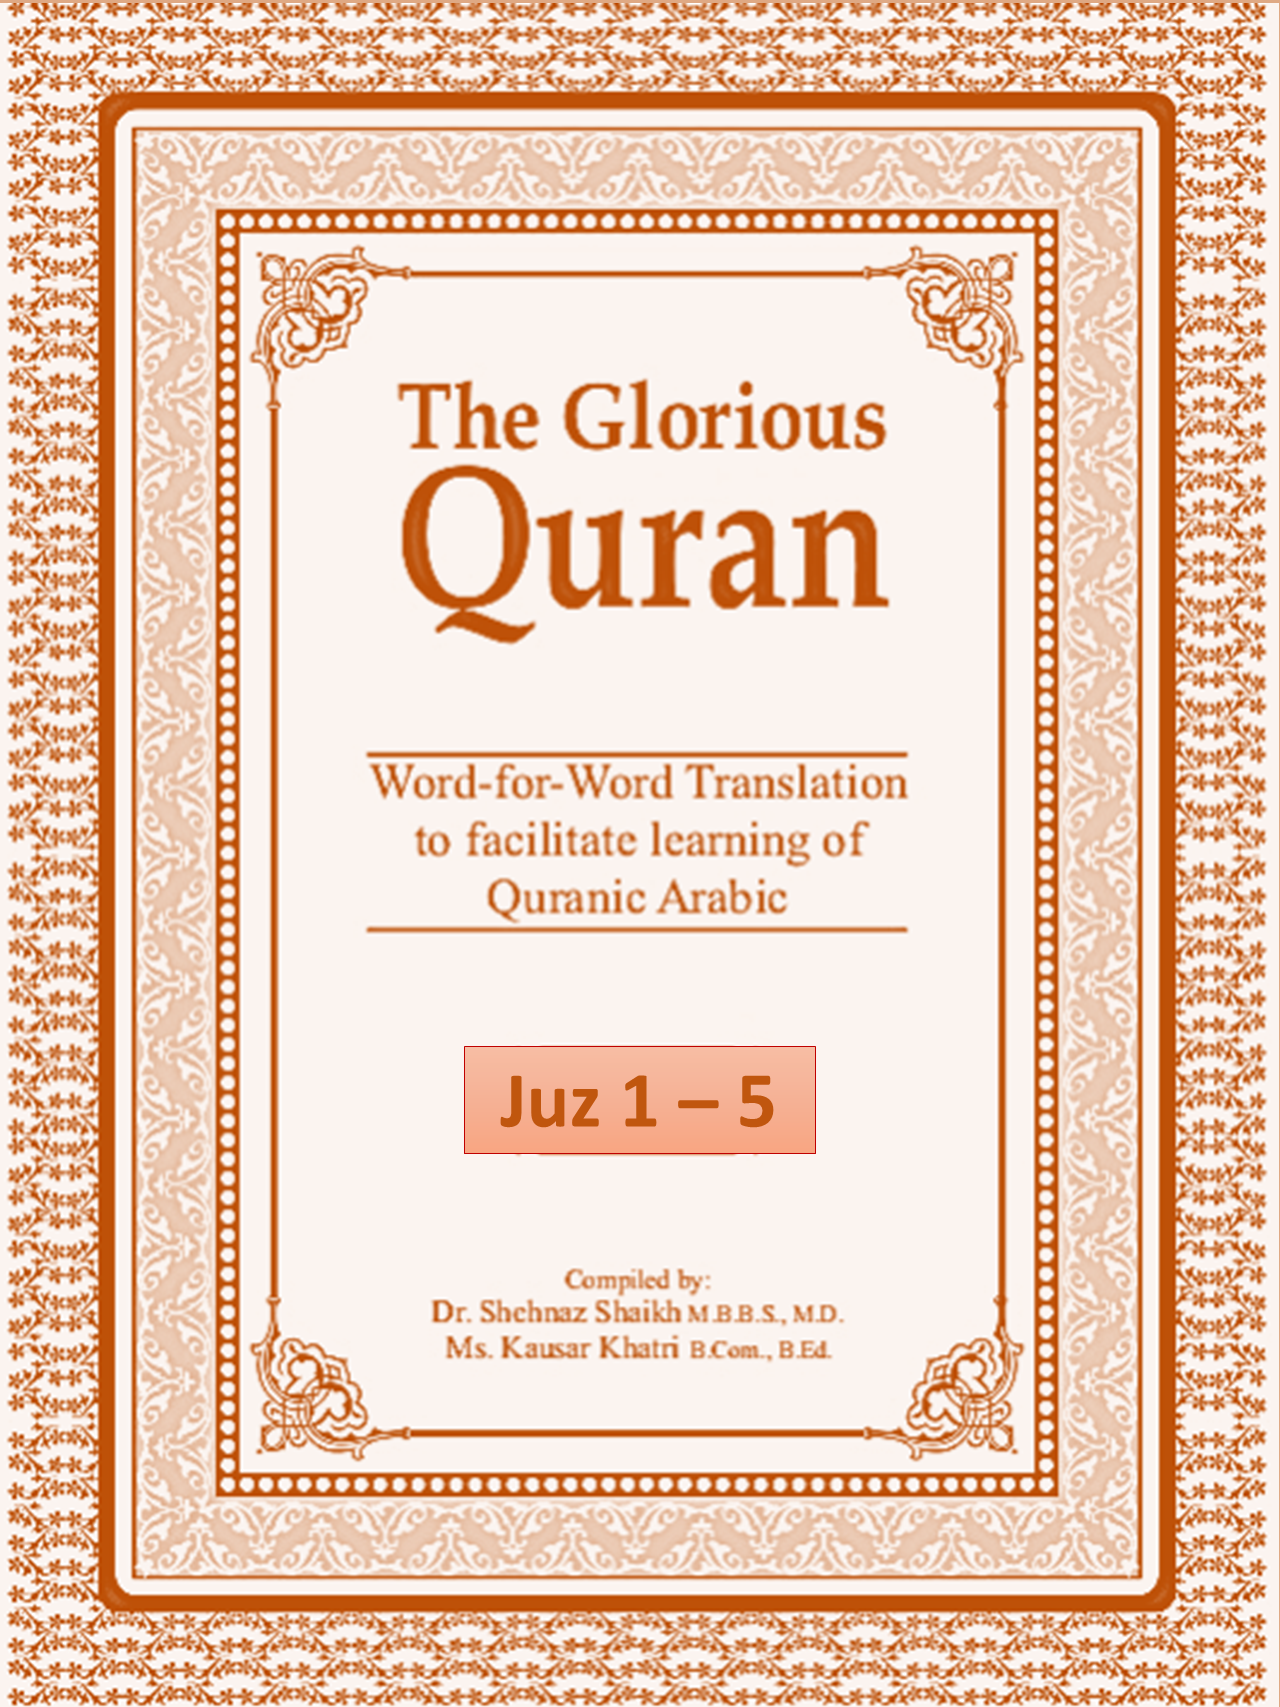 The Glorious Quran Vol 1 (Juz 1-5)